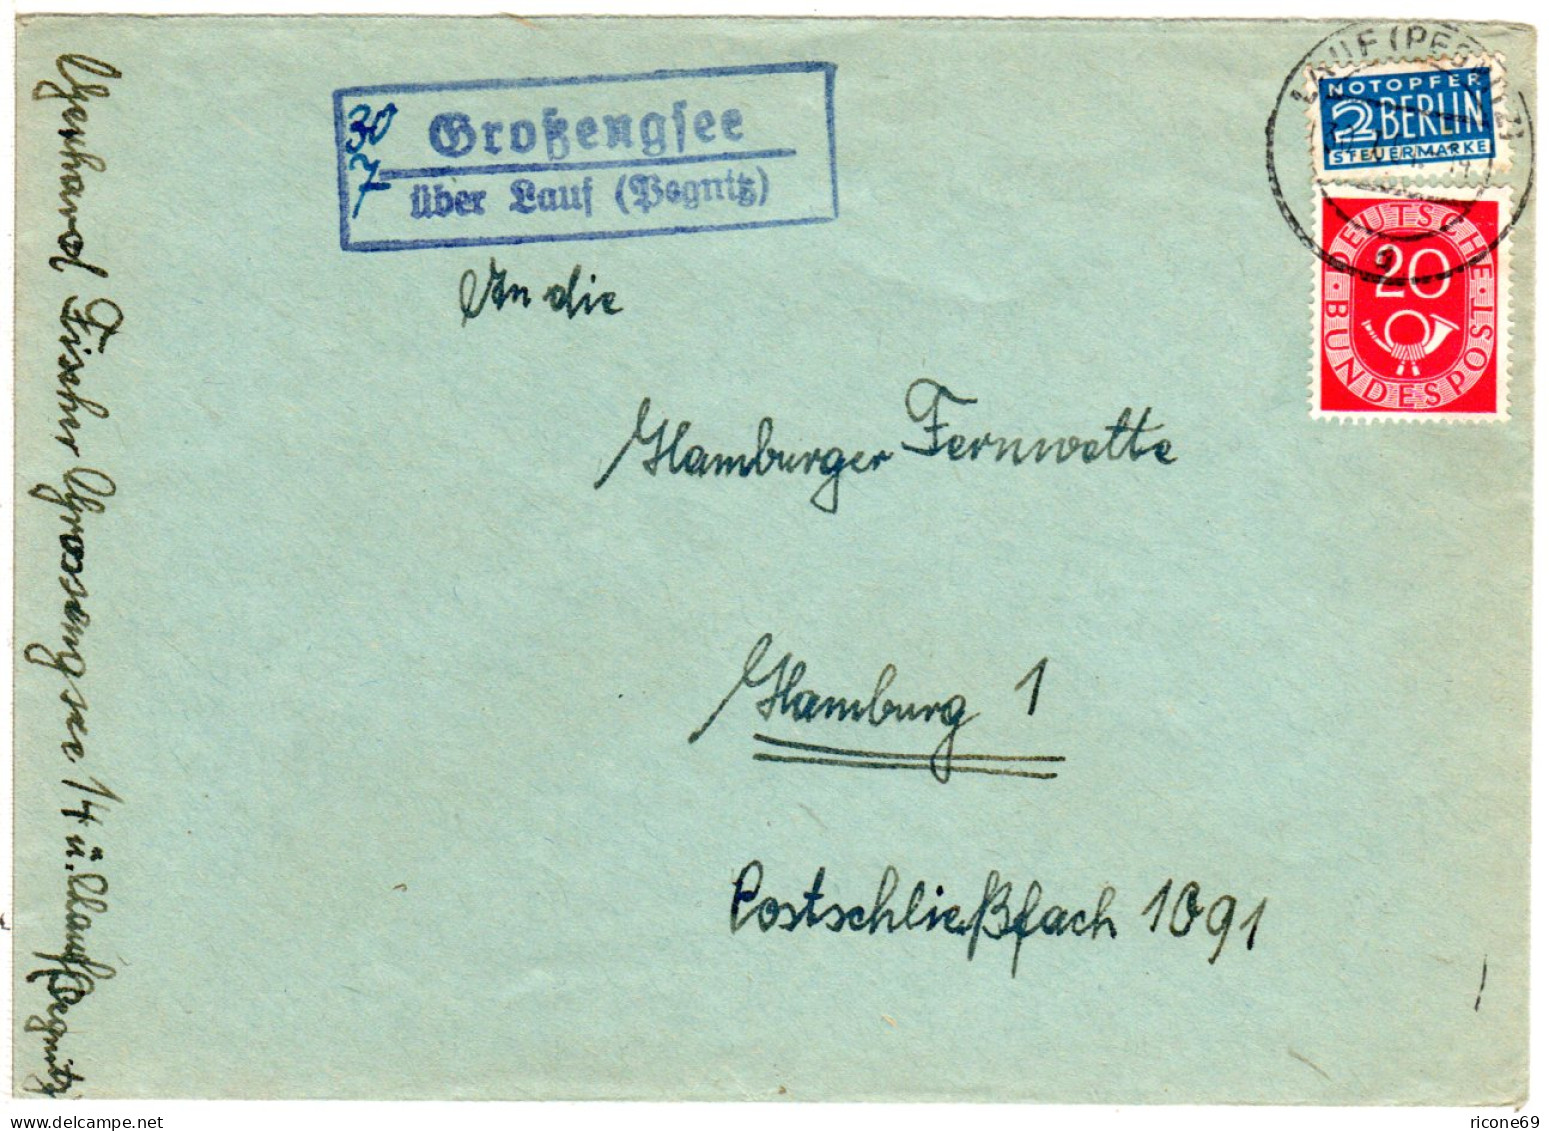 BRD 1951, Landpost Stempel GROSSENGSEE über Lauf Klar Auf Brief M. 20 Pf.  - Collezioni